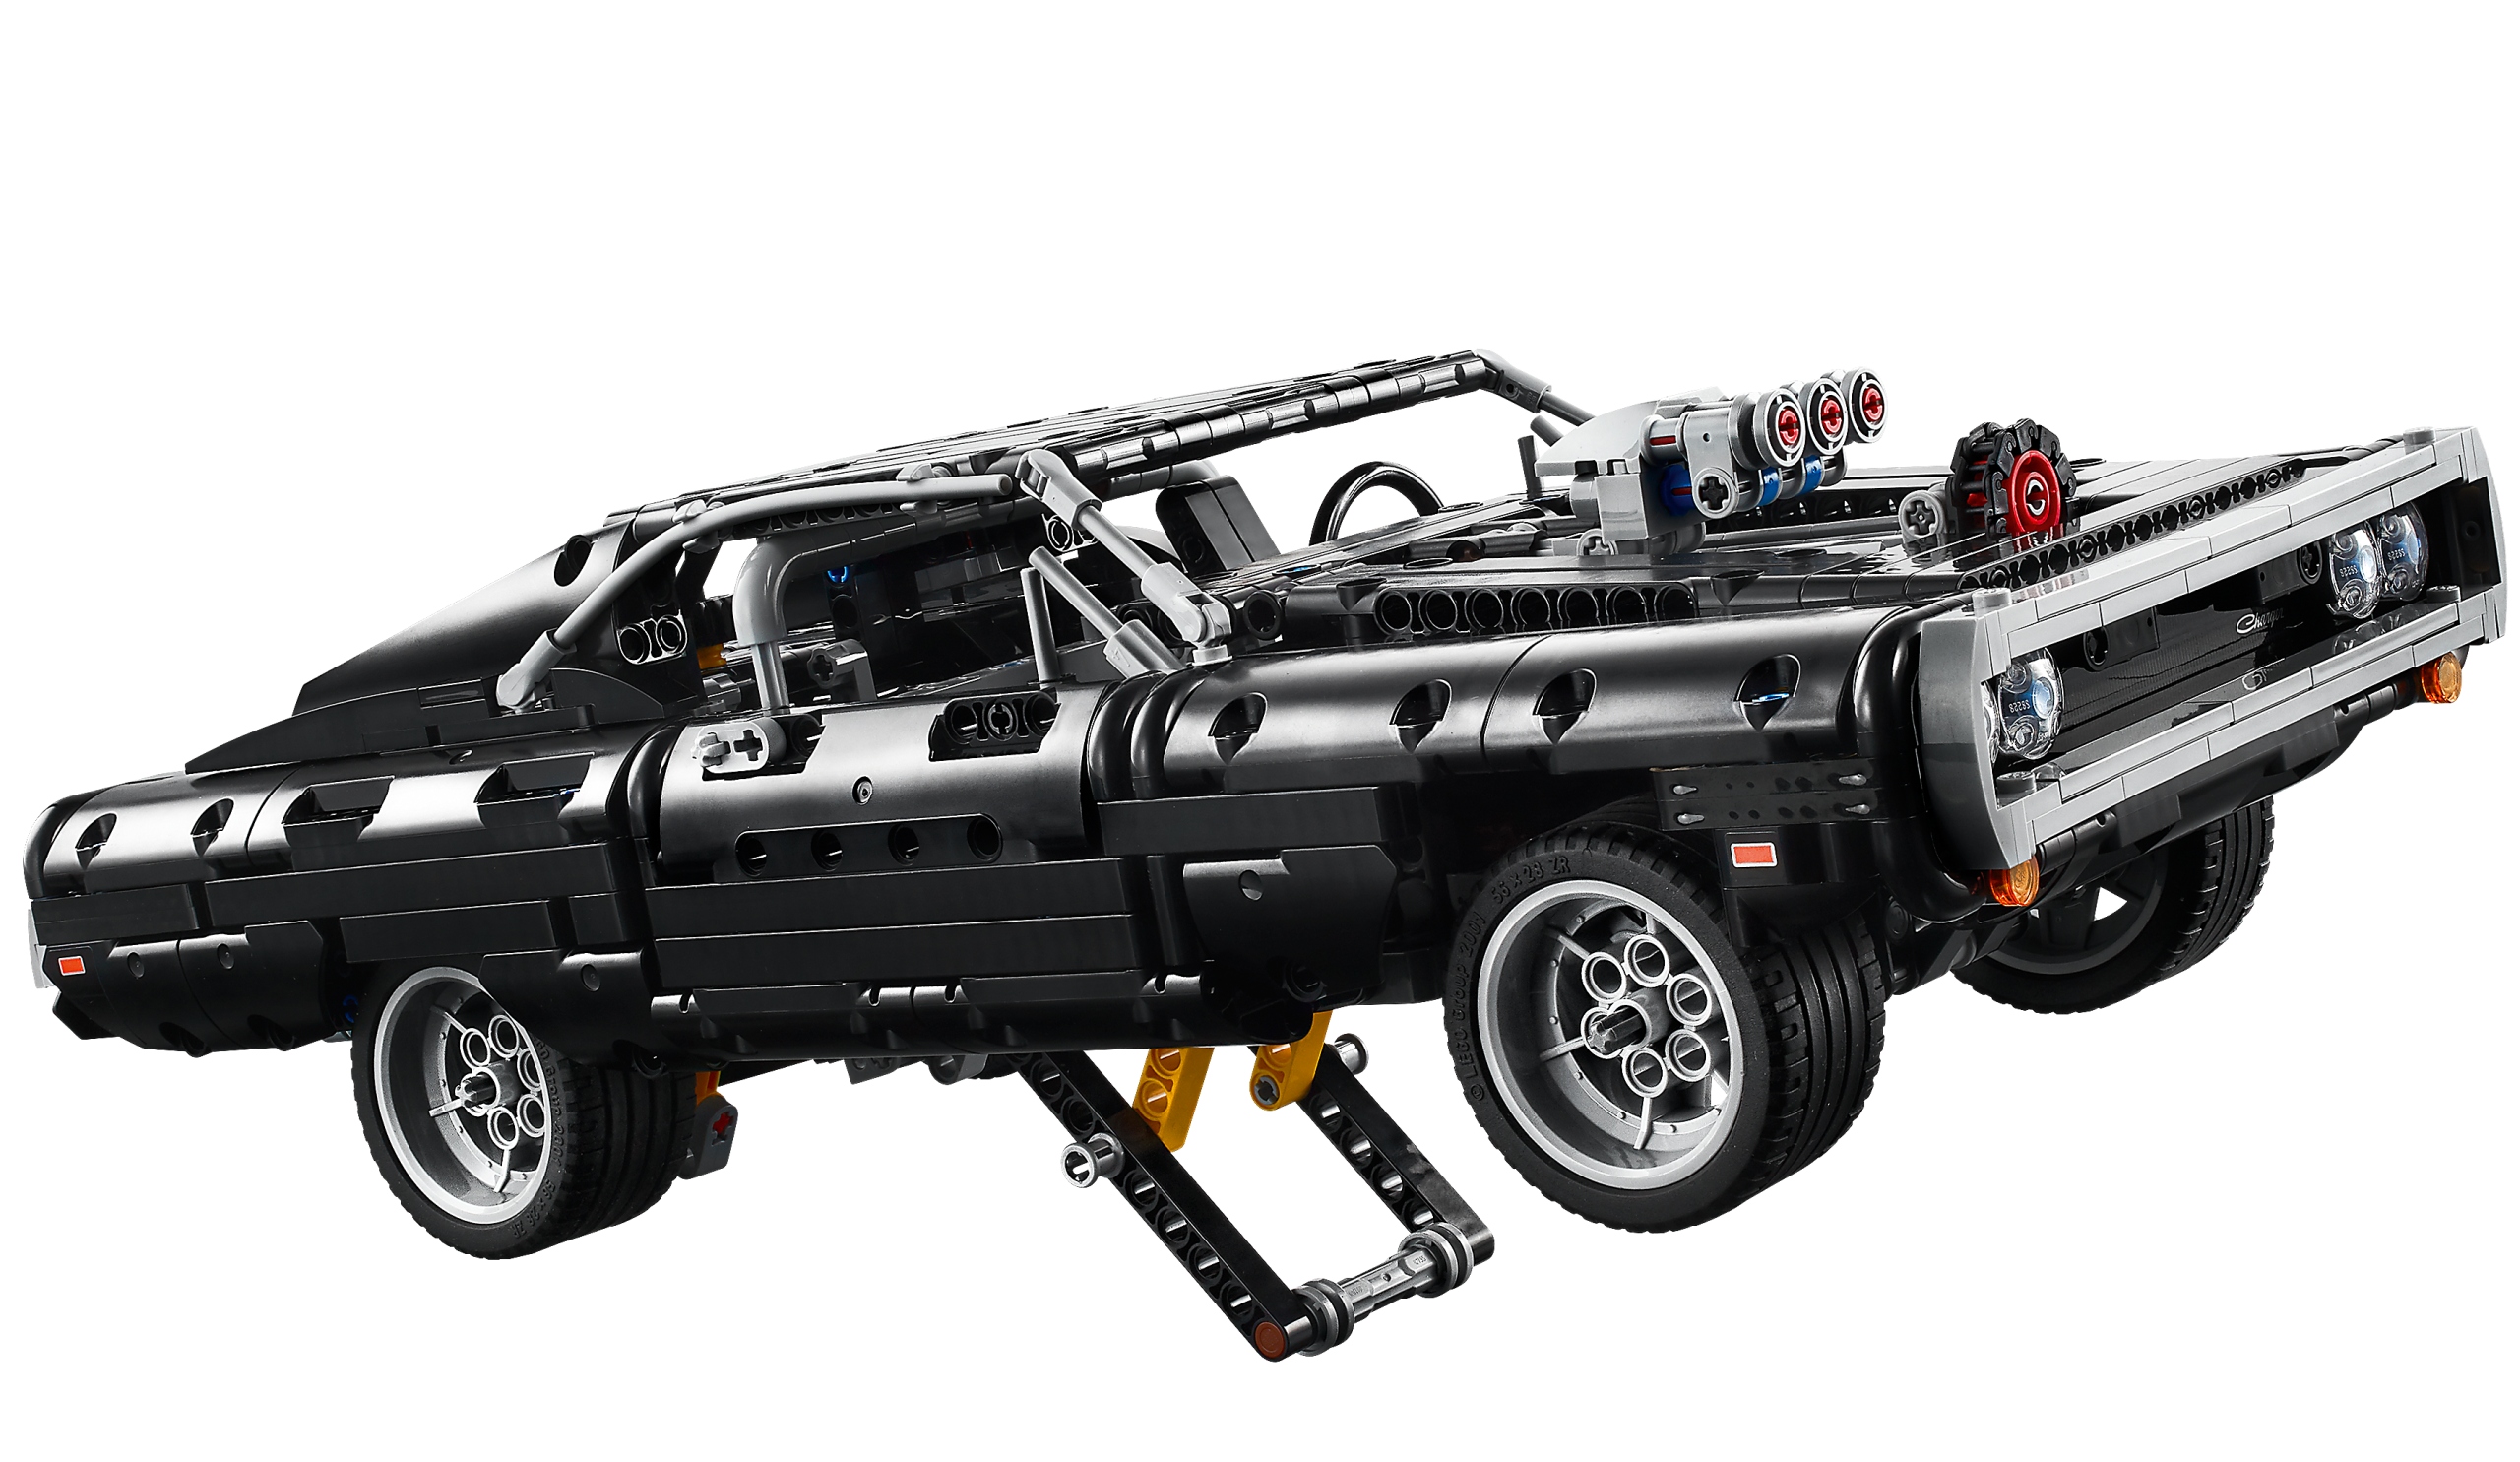 LEGO Technic Dom's Dodge Charger 42111 Waga produktu z opakowaniem jednostkowym 1.65 kg